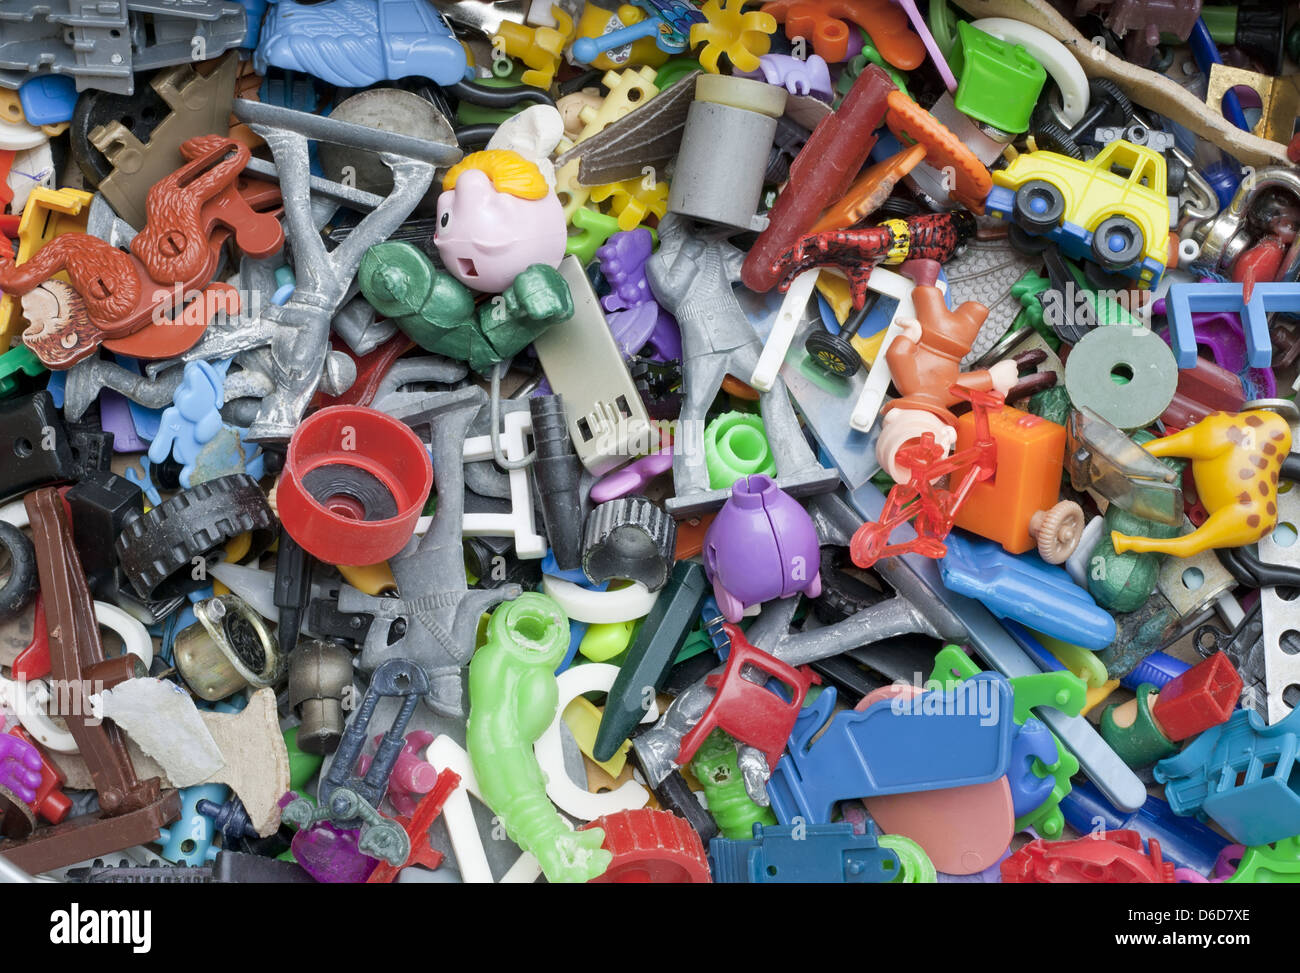 Oublié vieux jouets cassés Photo Stock - Alamy